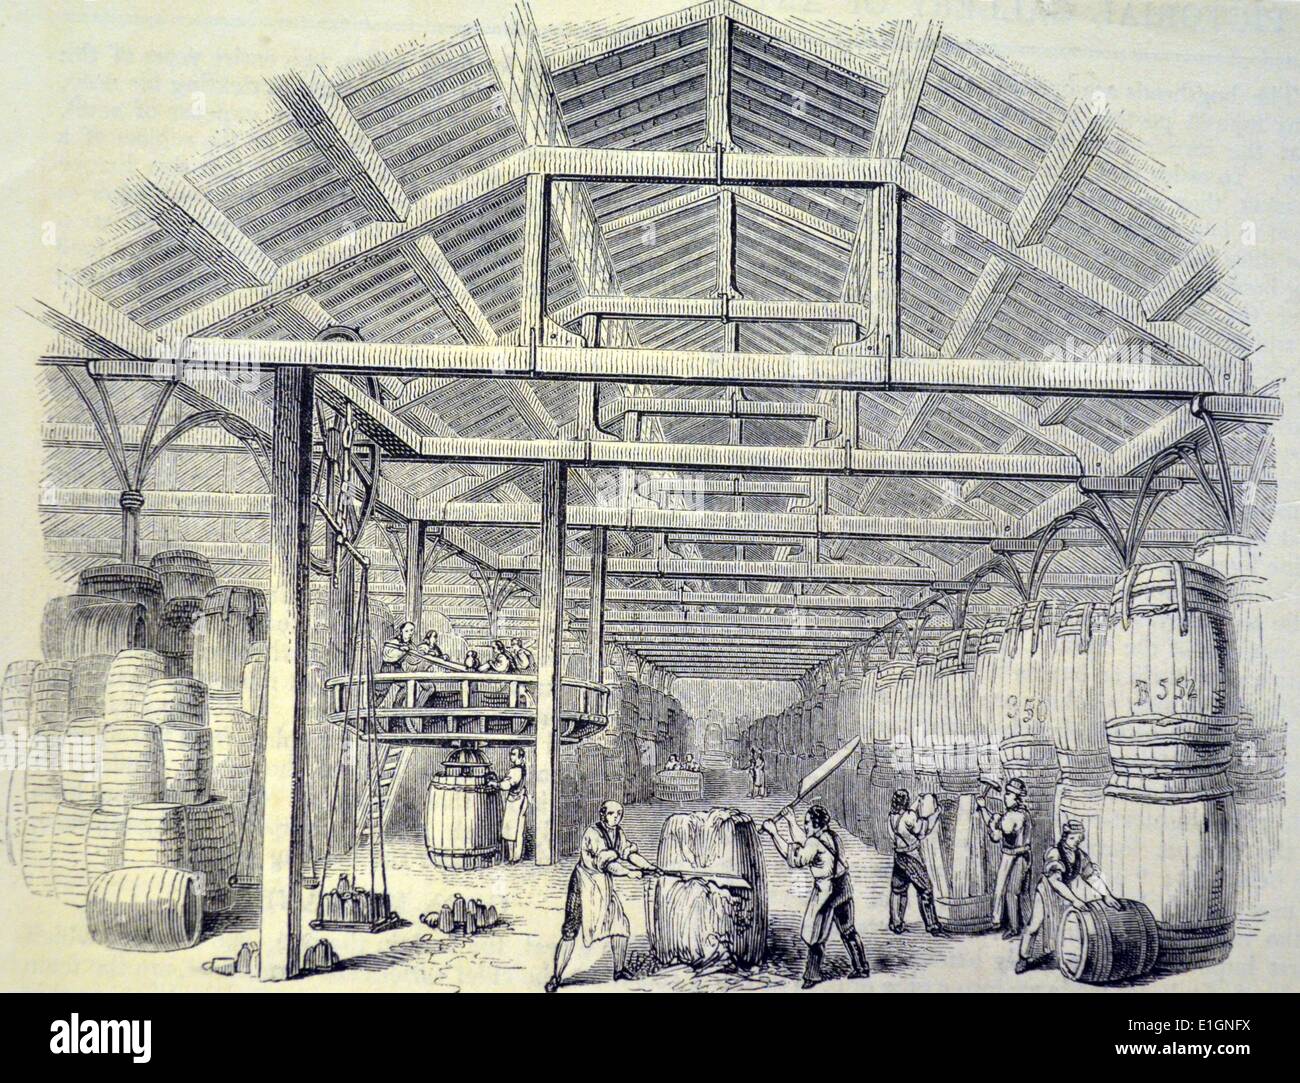 Maison de tabac dans les docks de Londres. Gravure sur bois, Londres, 1841. Banque D'Images